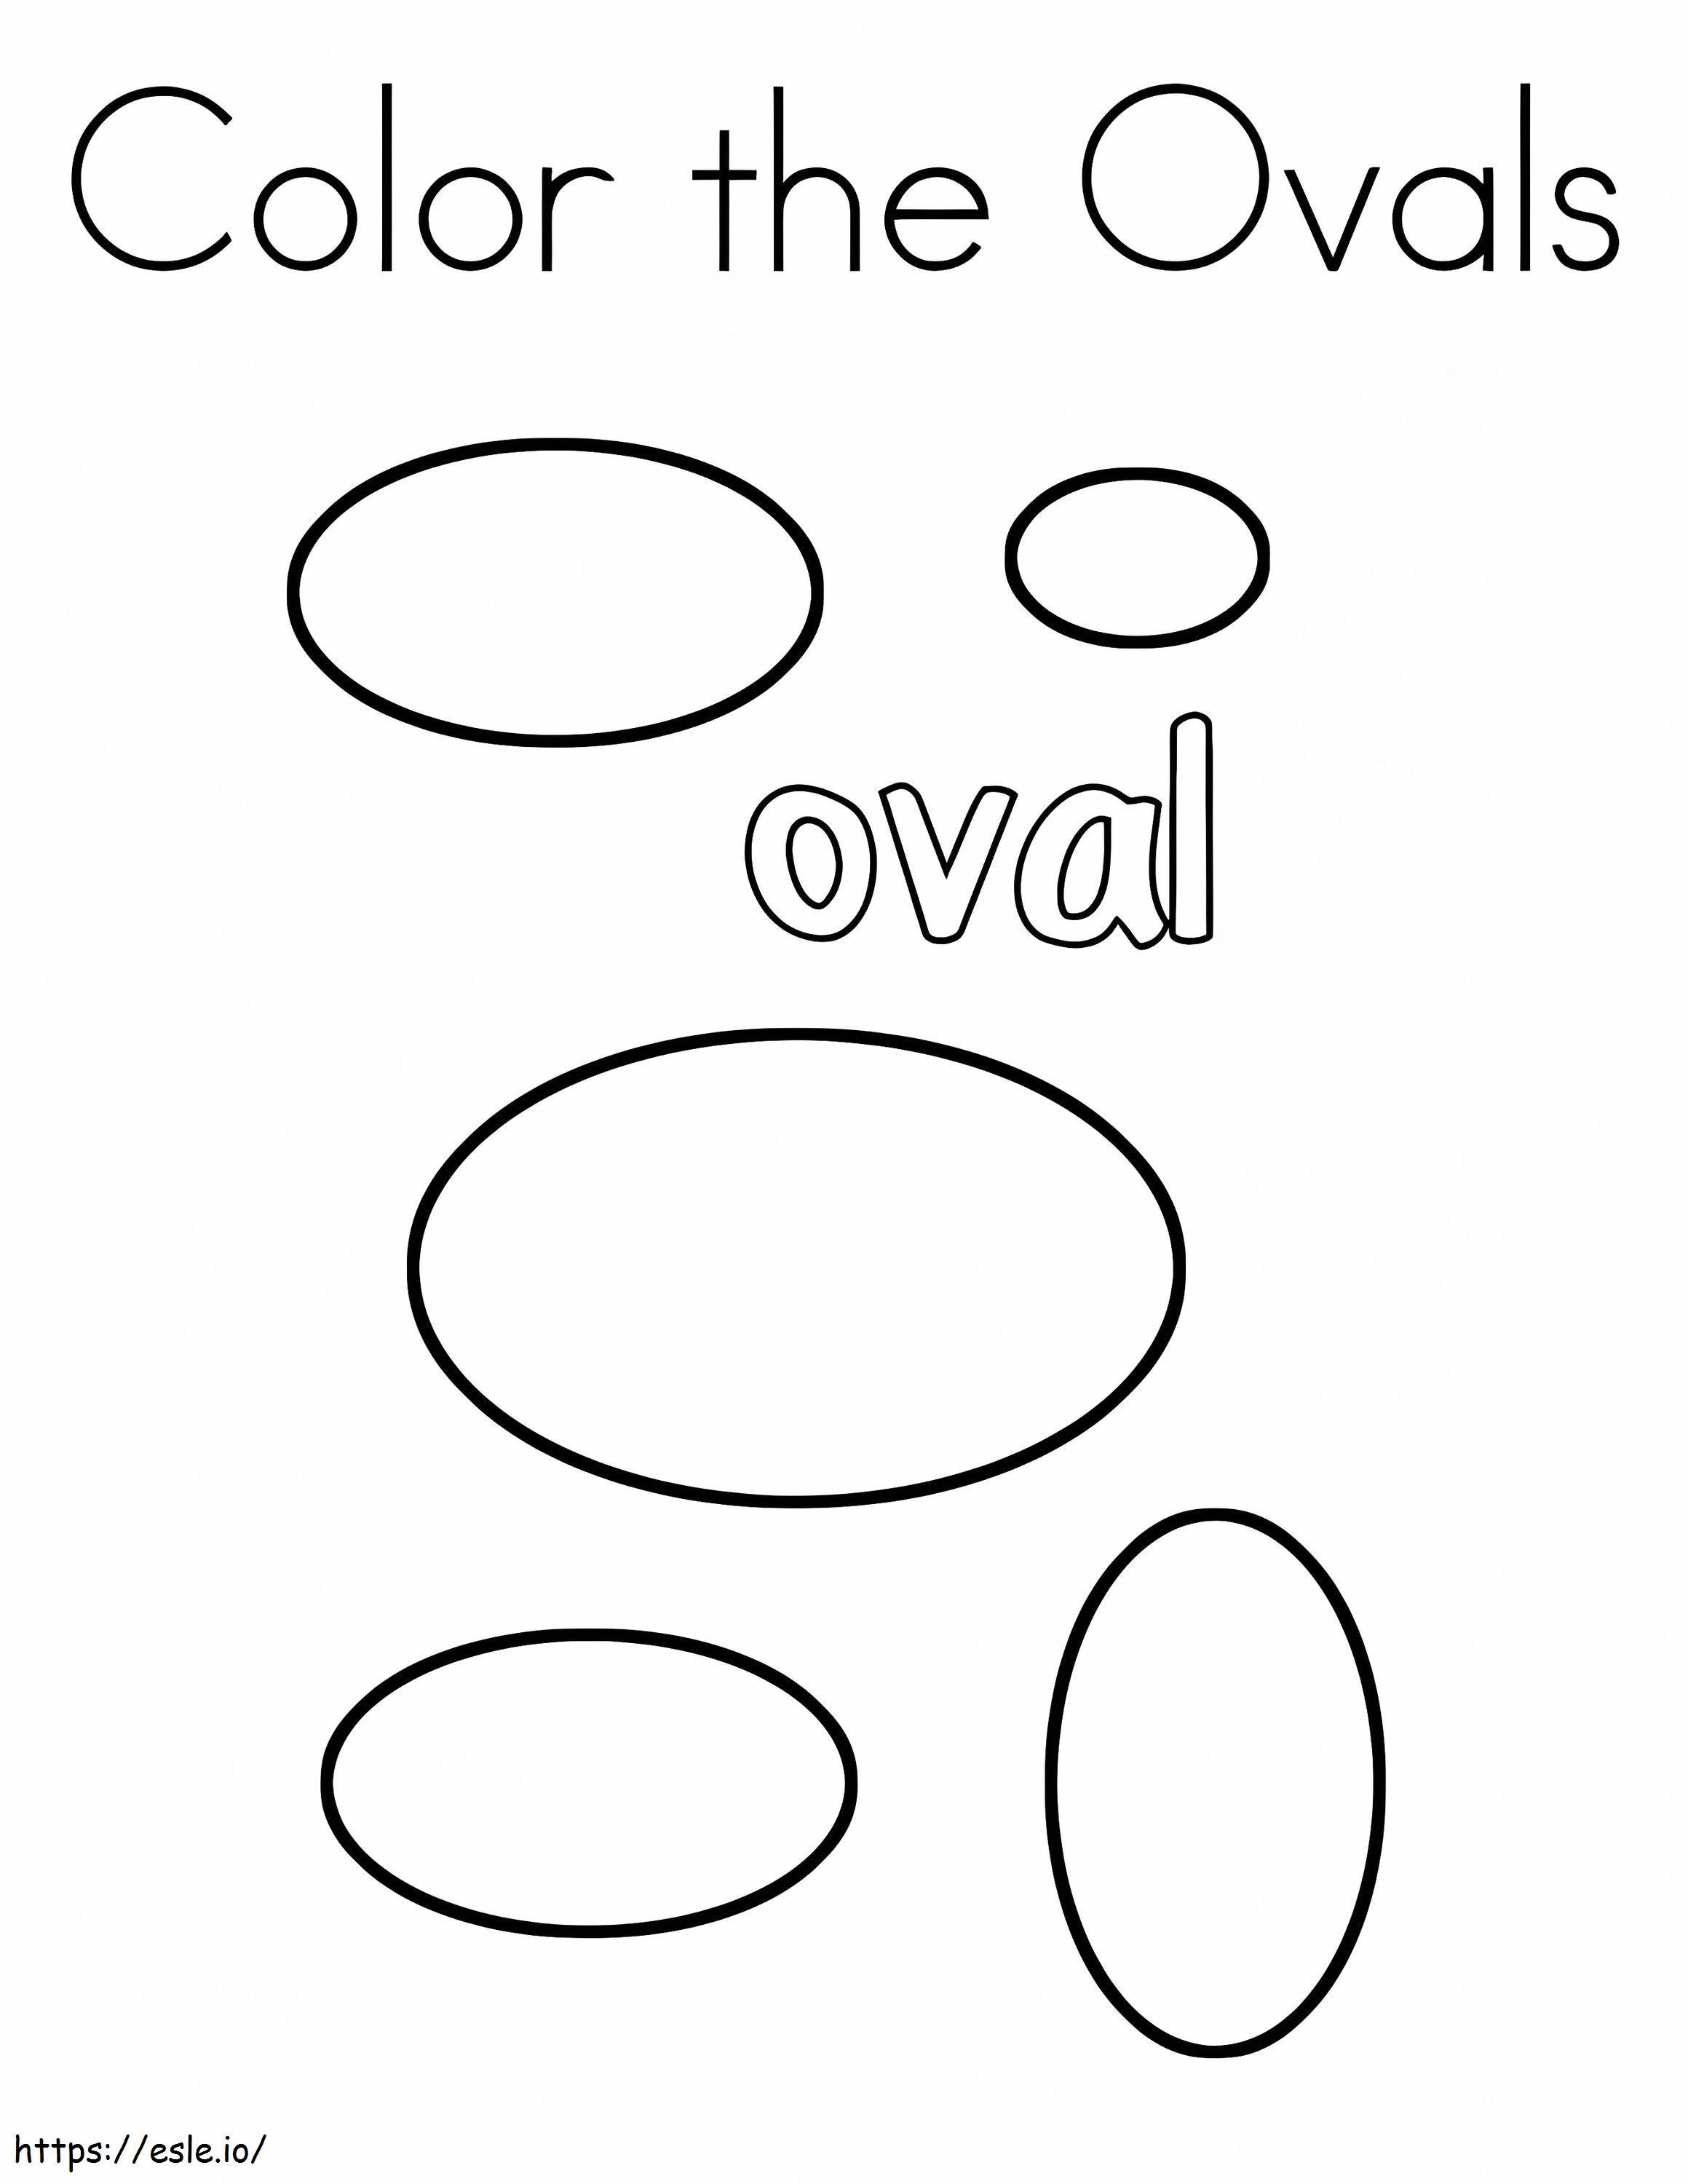 Forma oval para colorear